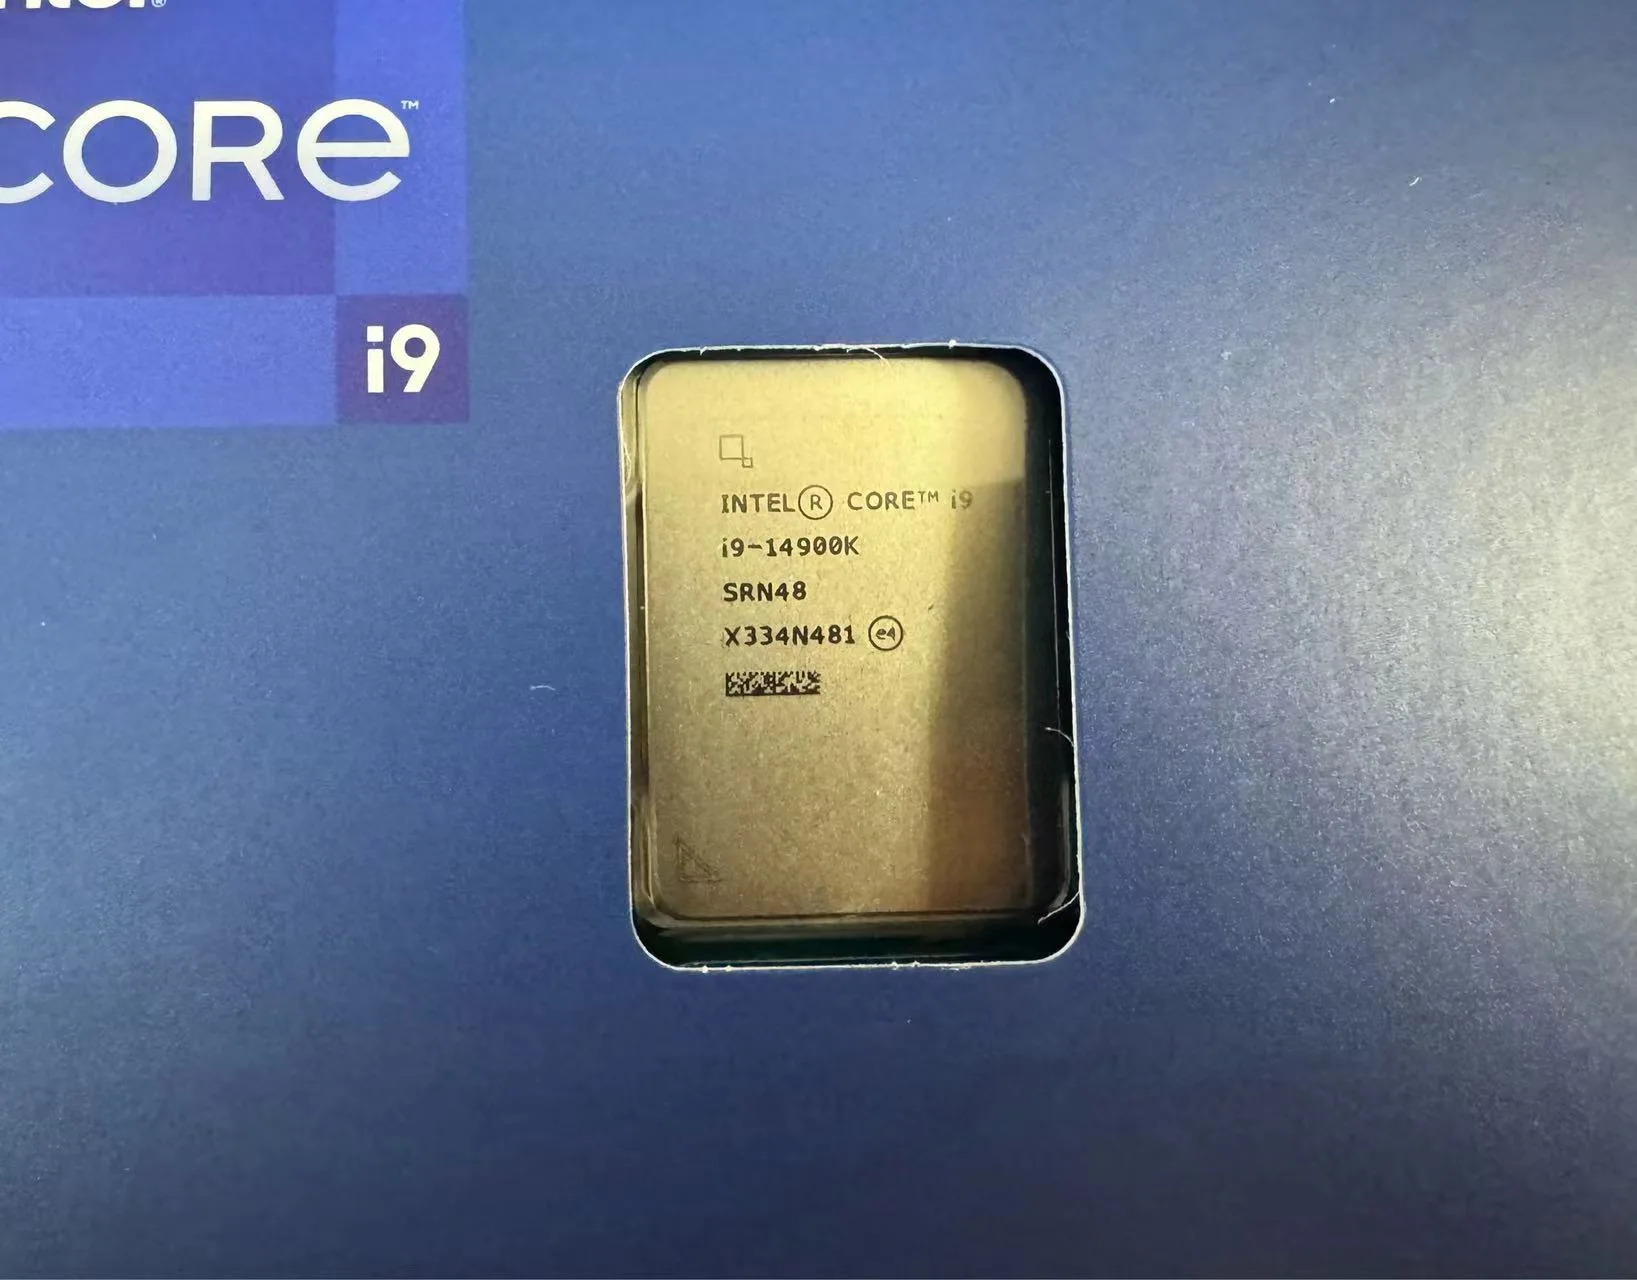 Intel Core i9-14900K hình ảnh